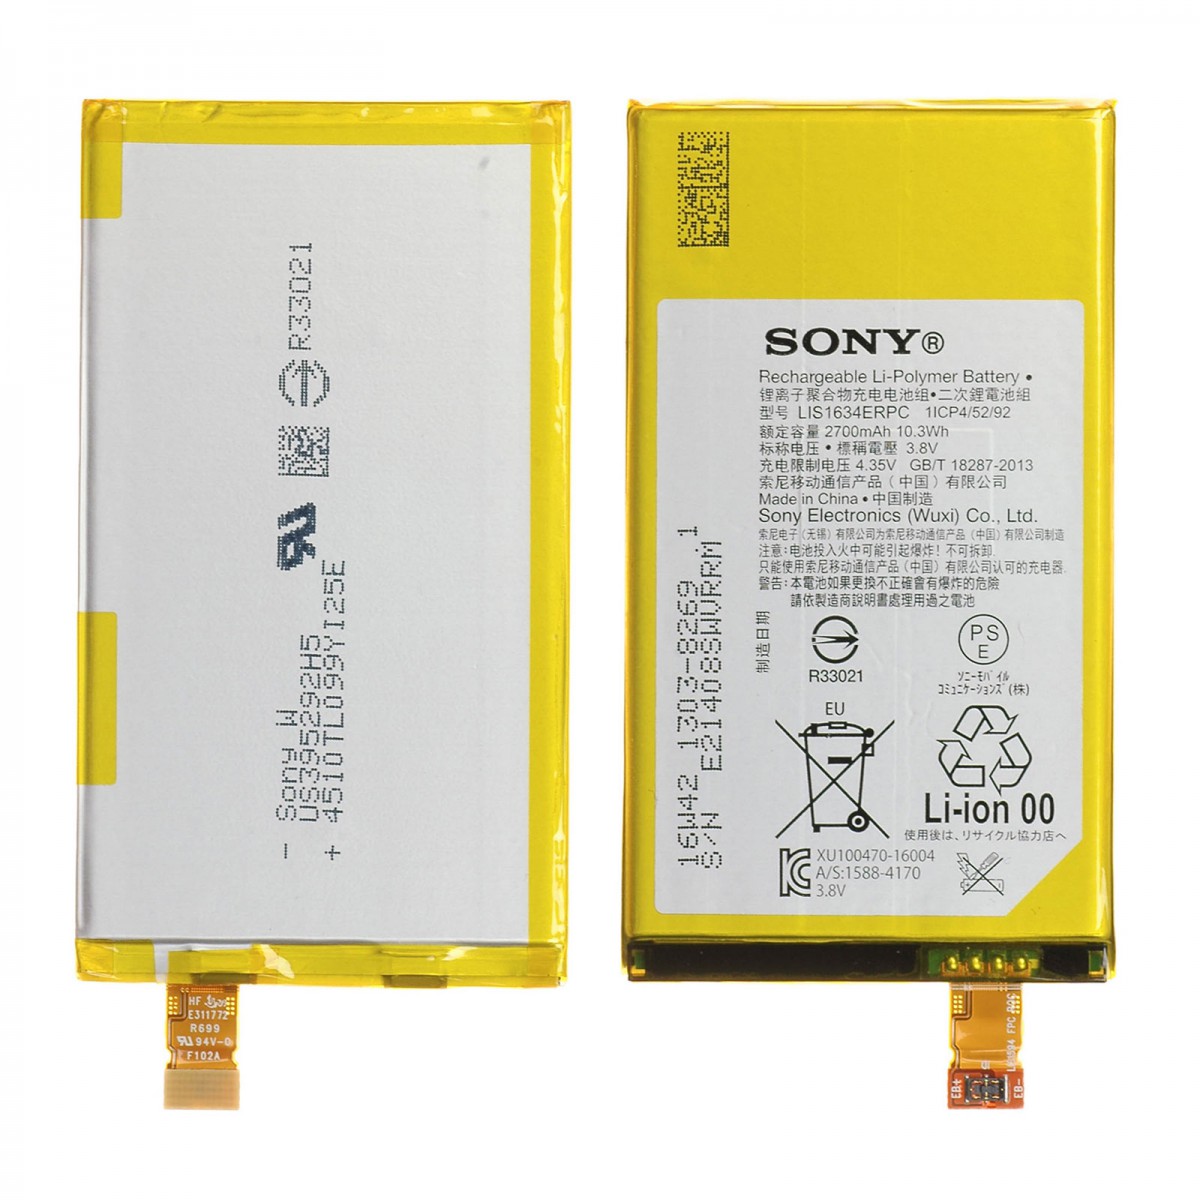 Sony xperia батарея. Sony Xperia Compact x батарея. Аккумулятор f5321. АКБ Xperia x Compact. R33021 Sony аккумулятор.